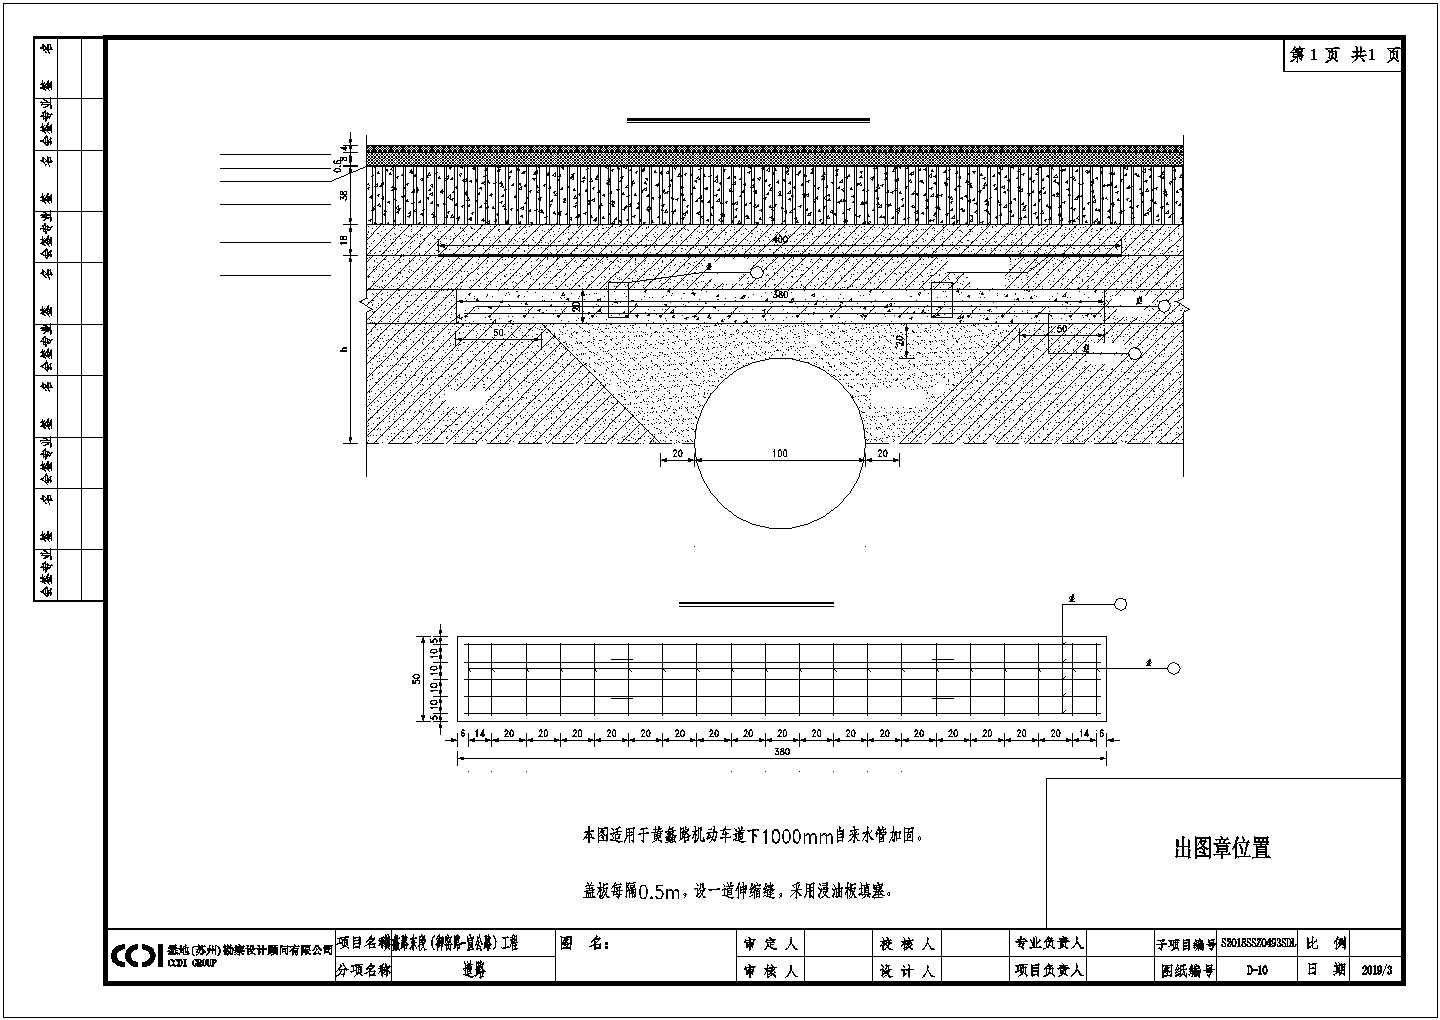 黄蠡路四期工程-施工图设计-道路-10自来水管道加固设计图